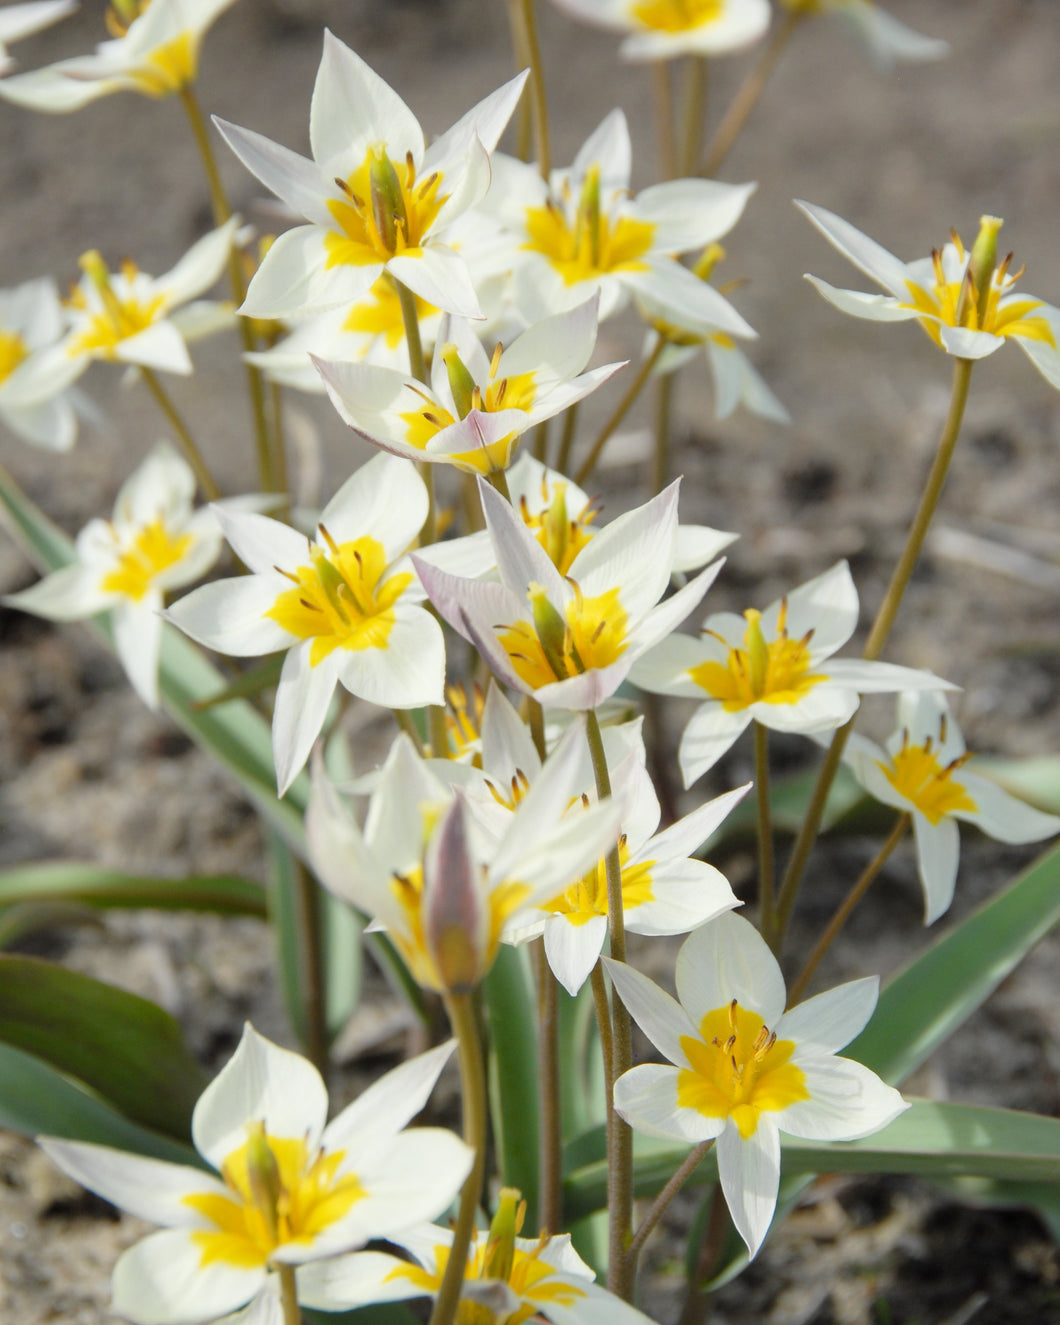 Tulip Turkestanica (15 bulbs)